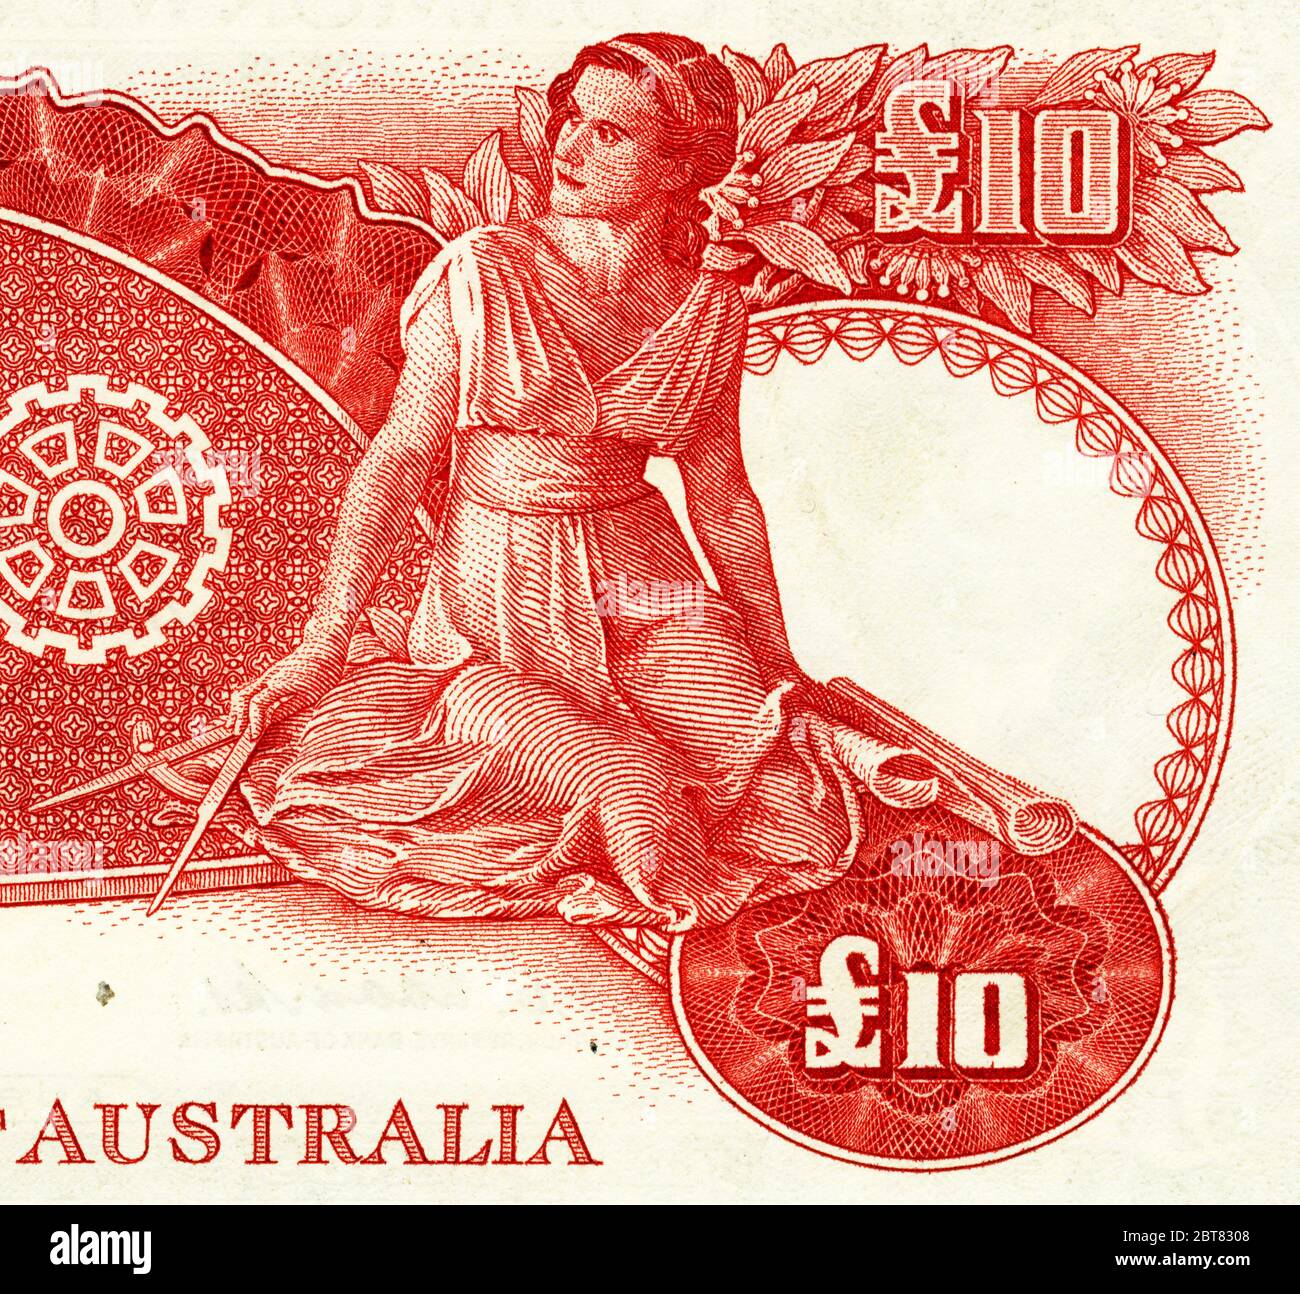 Eine Frau mit Trennern und Plänen auf der Rückseite einer australischen 10 Pfund Banknote, die zwischen 1954 und 1959 ausgegeben wurde Stockfoto